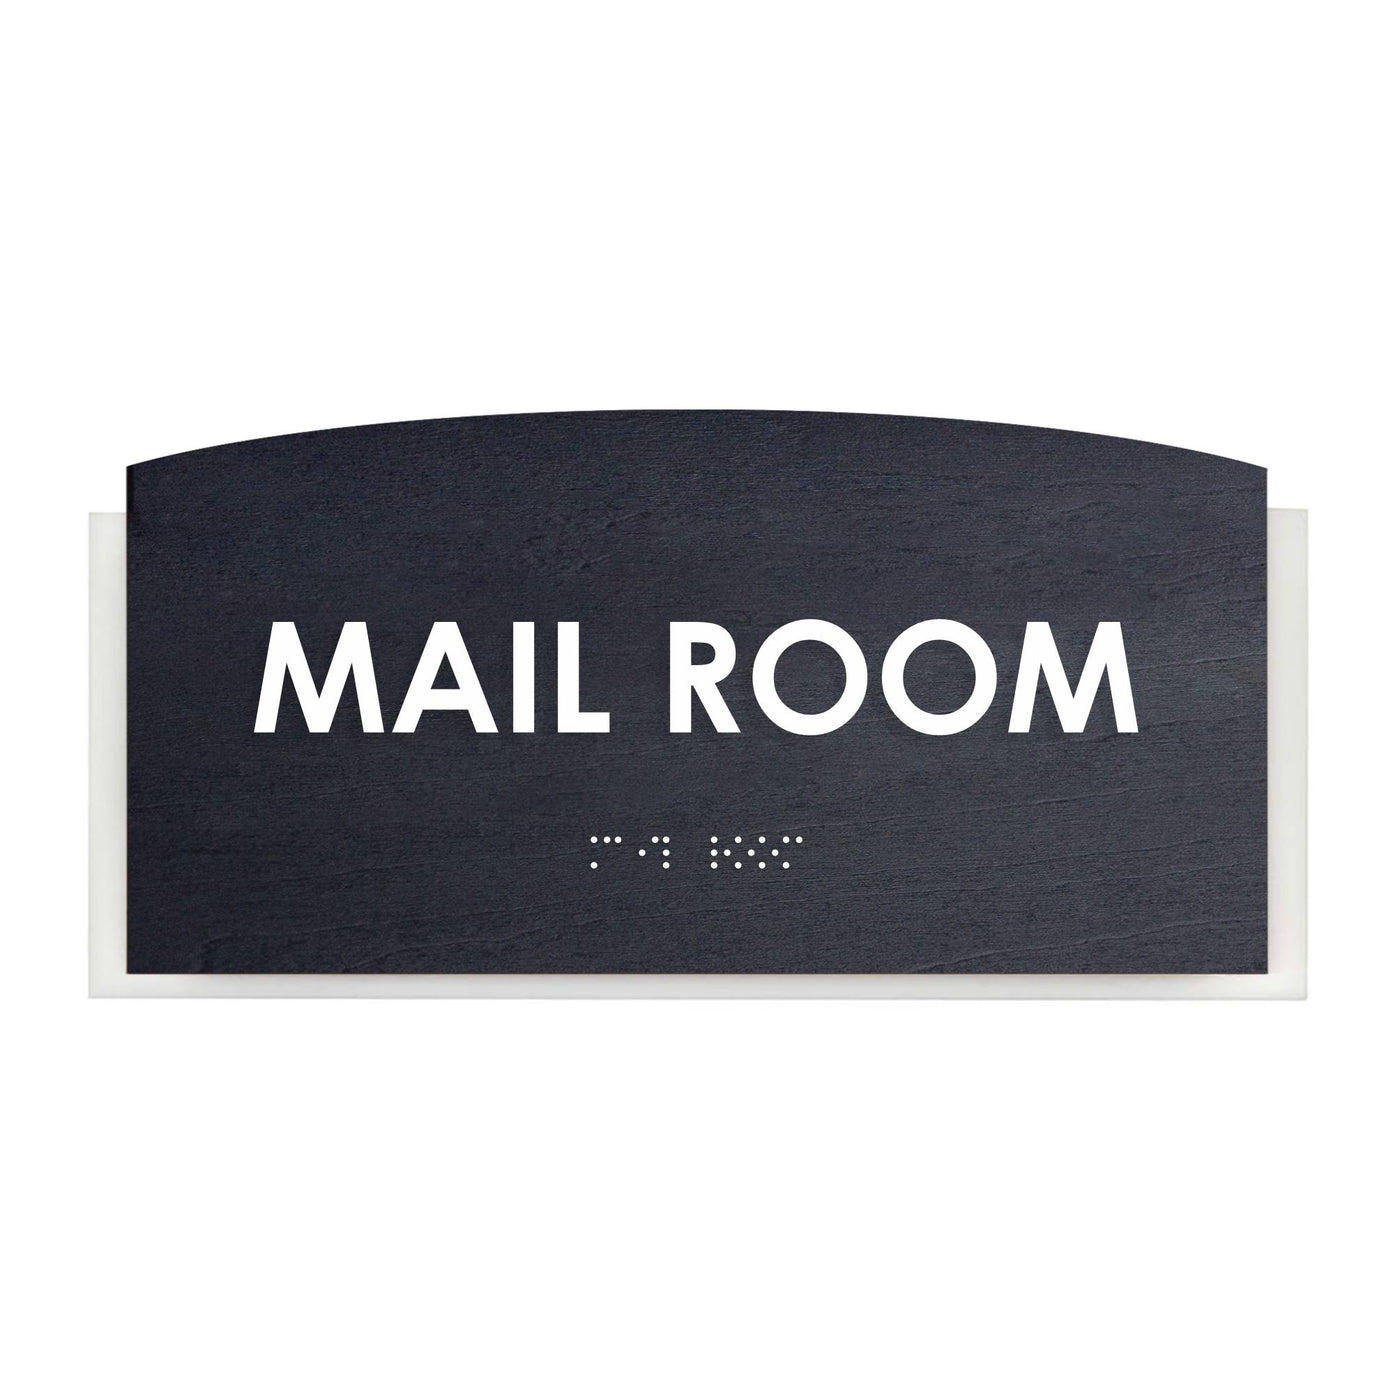 Wood Mail Room Door Sign "Scandza" Design